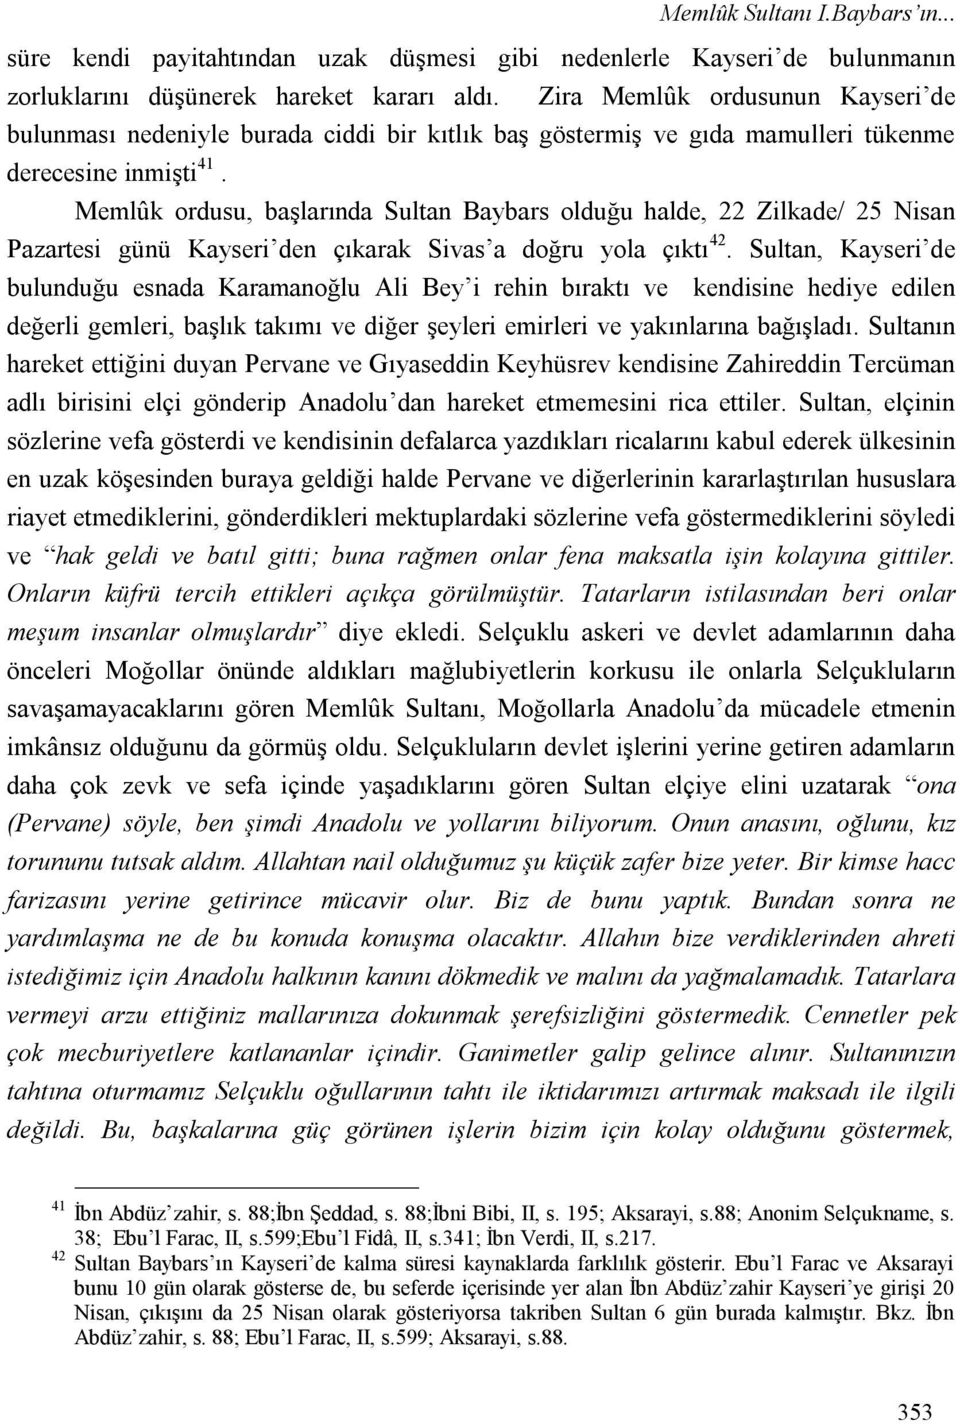 Memlûk ordusu, başlarında Sultan Baybars olduğu halde, 22 Zilkade/ 25 Nisan Pazartesi günü Kayseri den çıkarak Sivas a doğru yola çıktı 42.